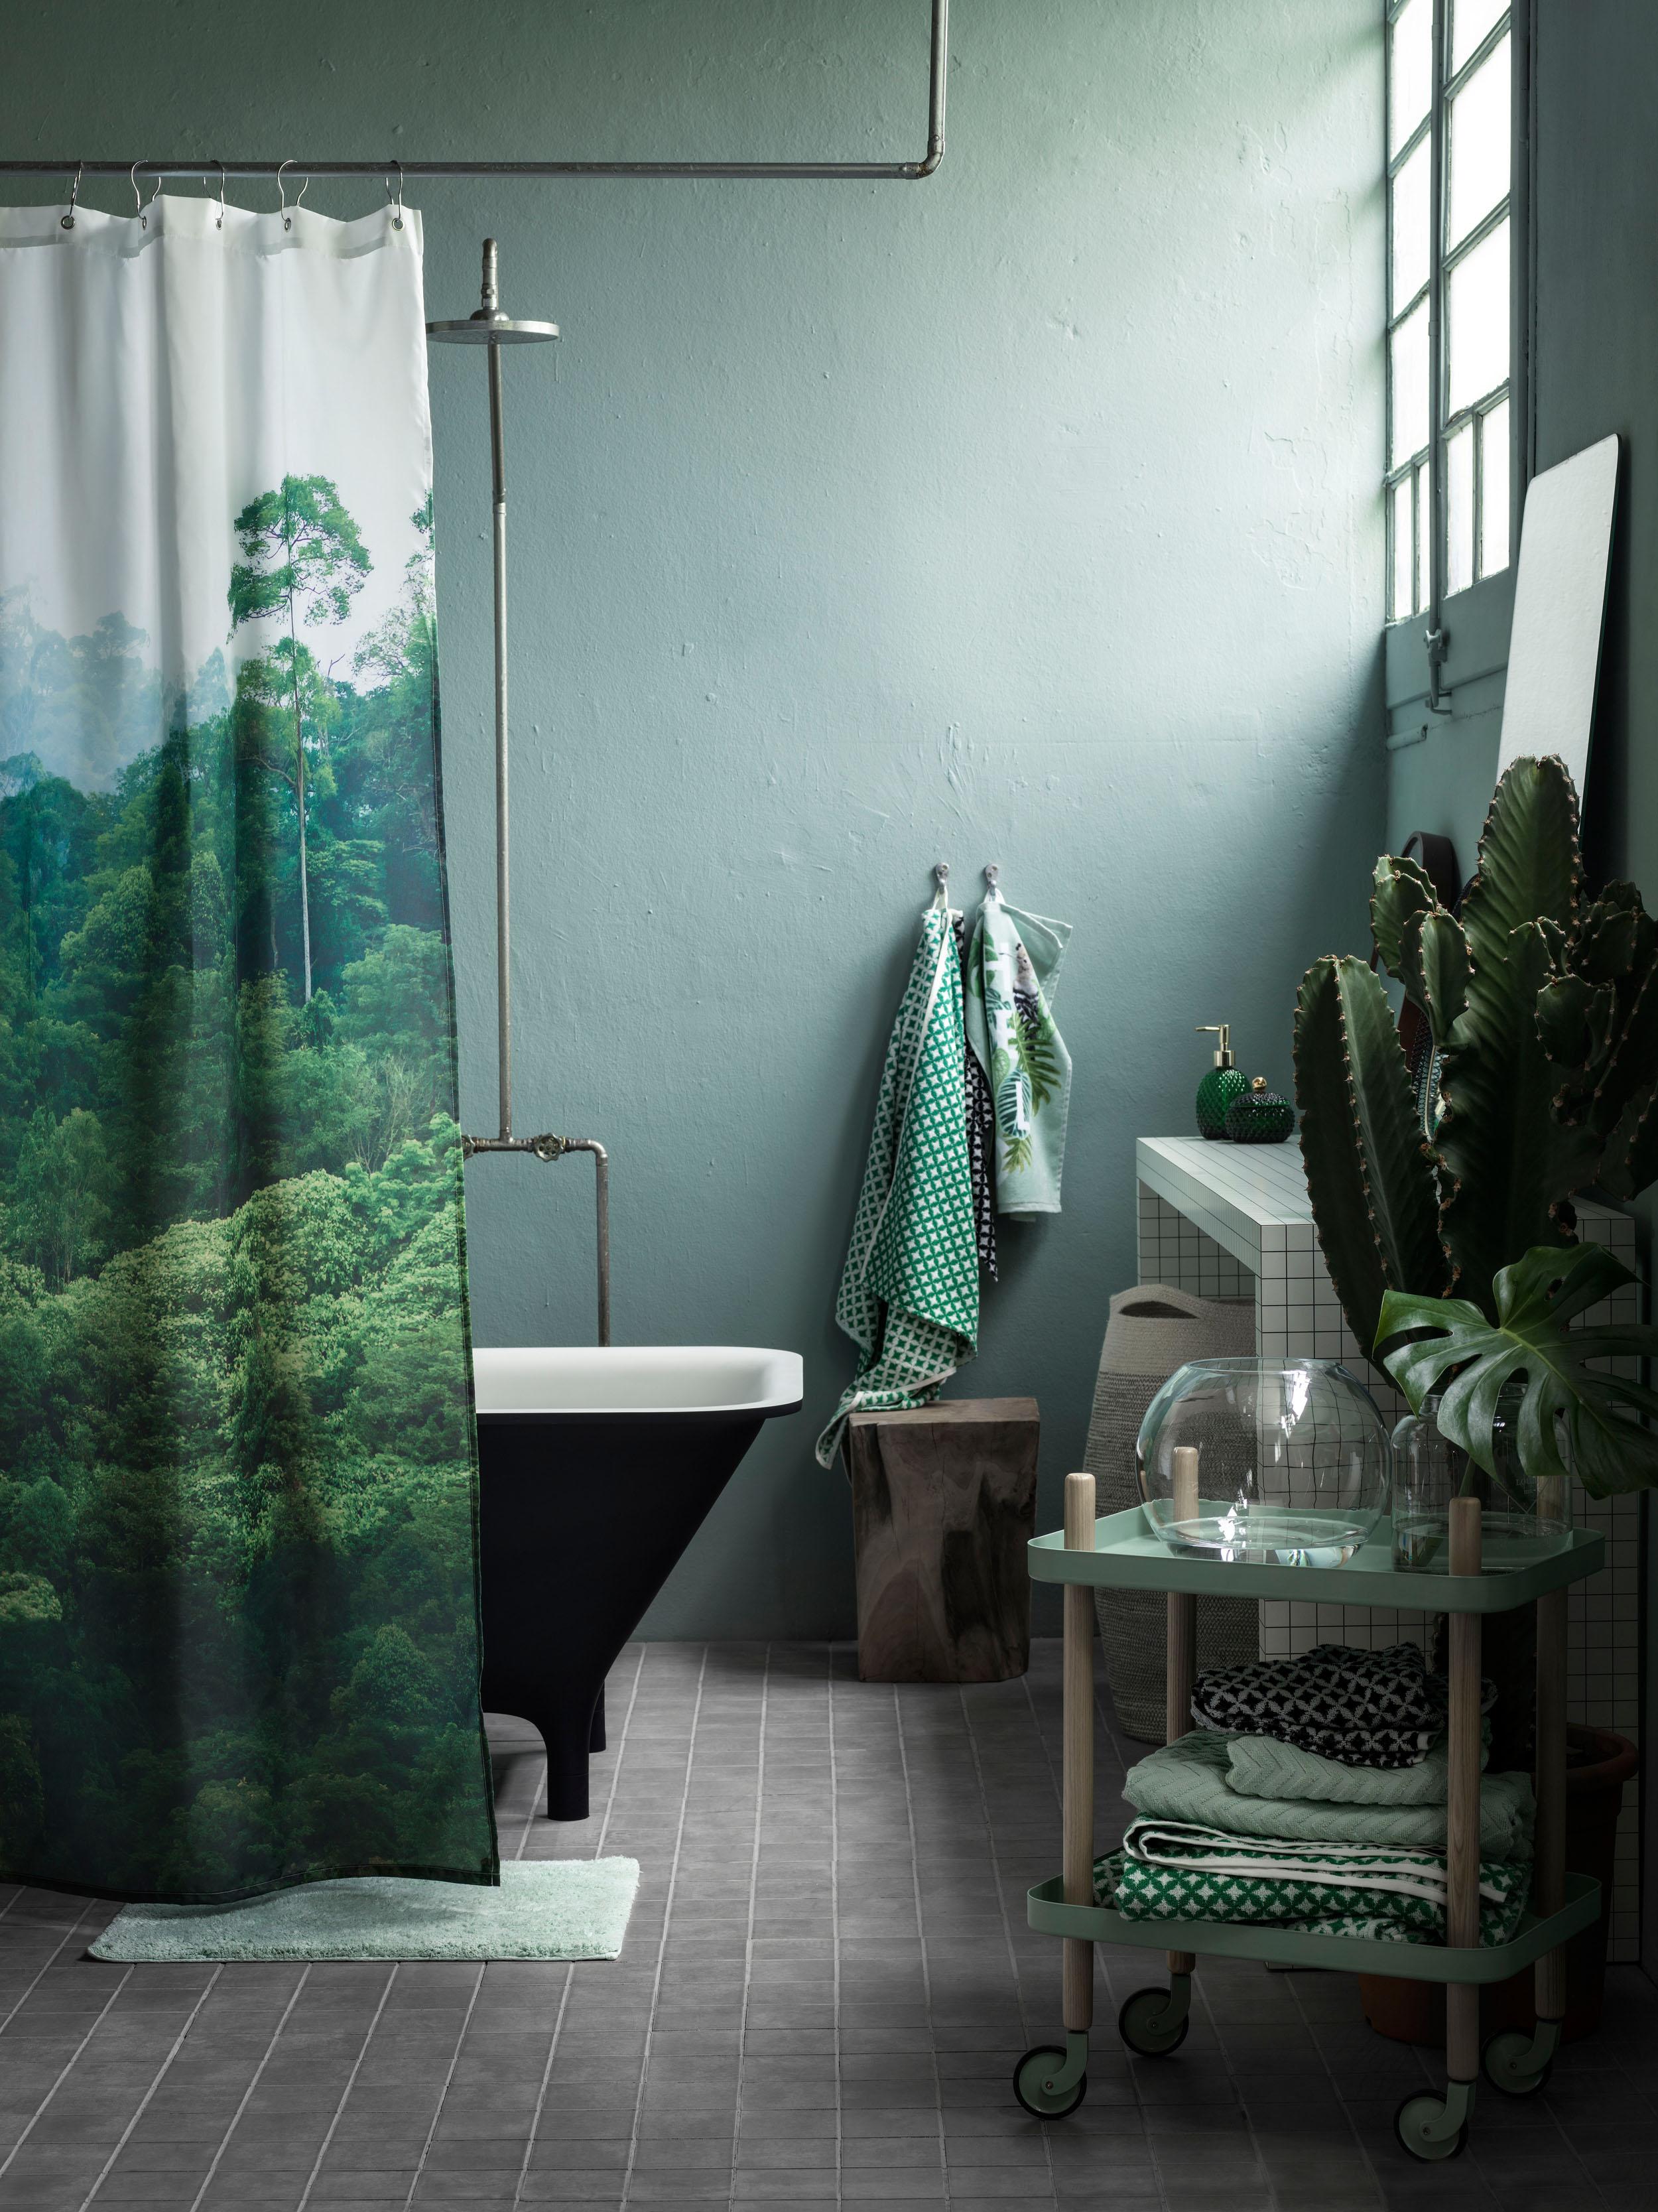 Badezimmer grün einrichten #bad #badezimmer #grauefliesen #schwarzebadewanne #badezimmergestalten #zimmergestaltung ©H&M Home